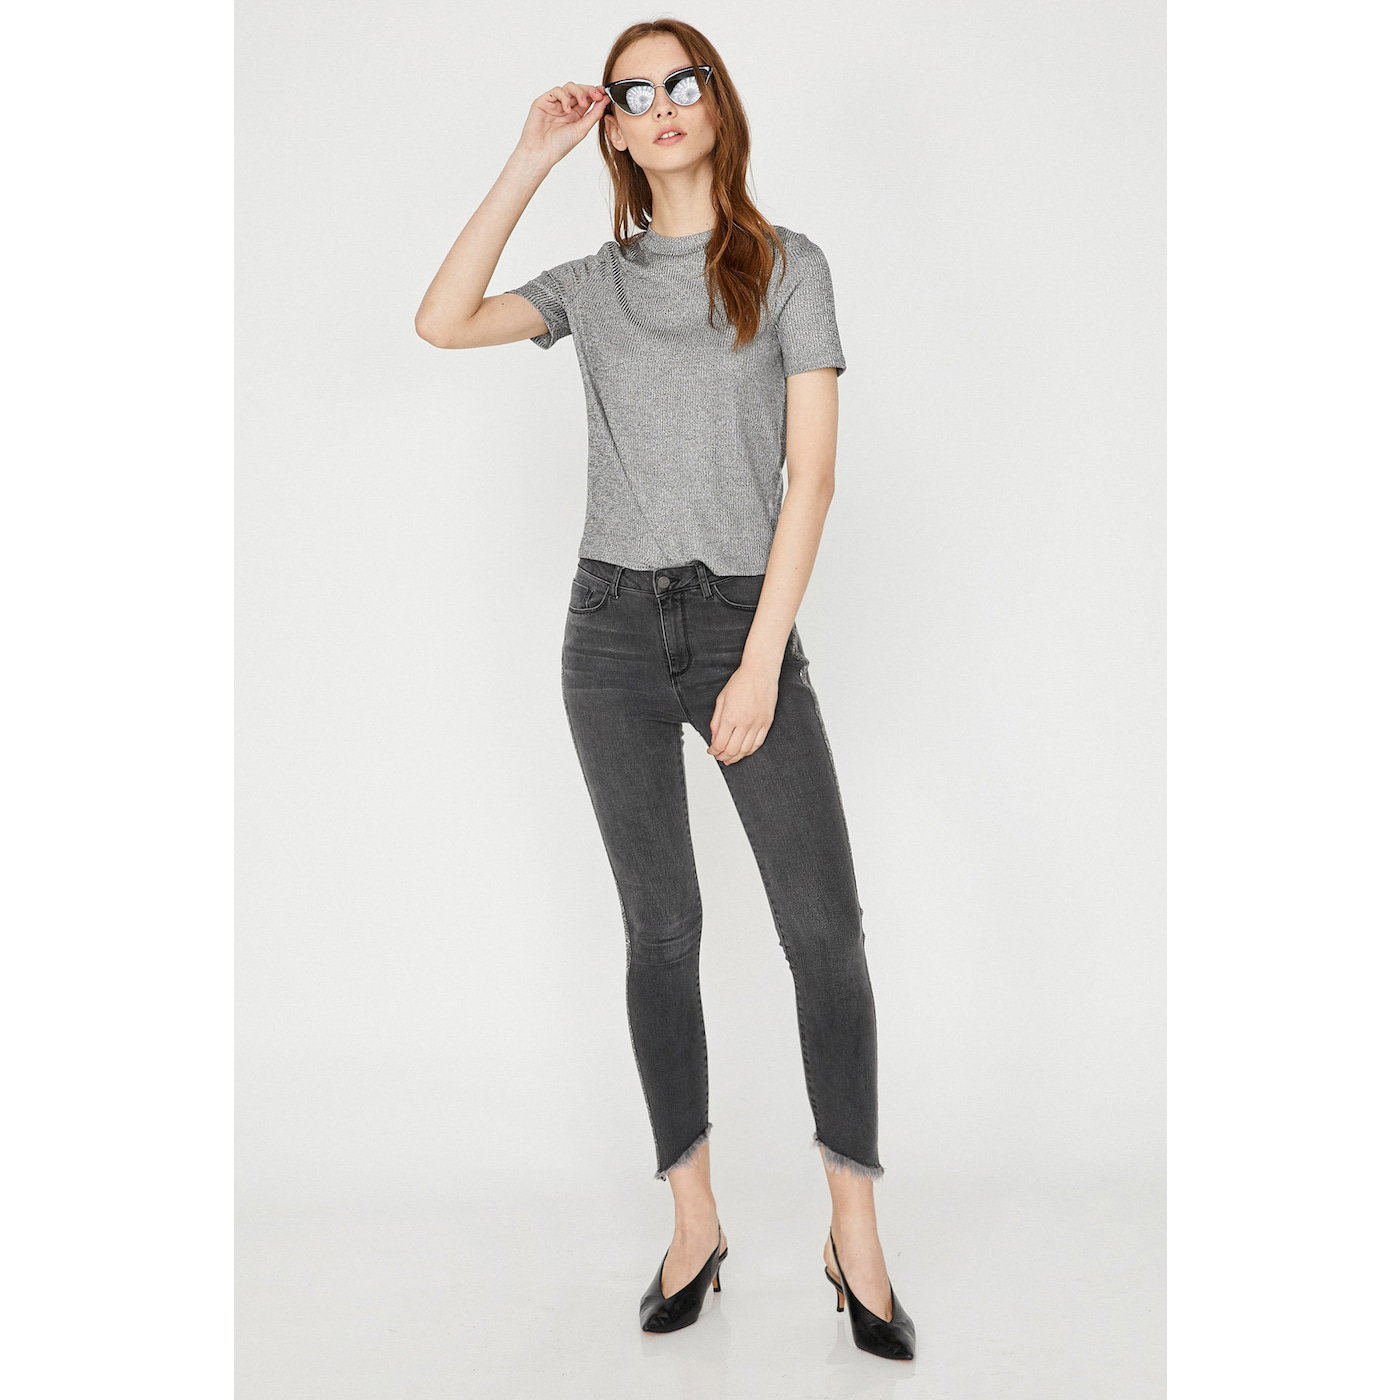 Koton Women Gray Jeans